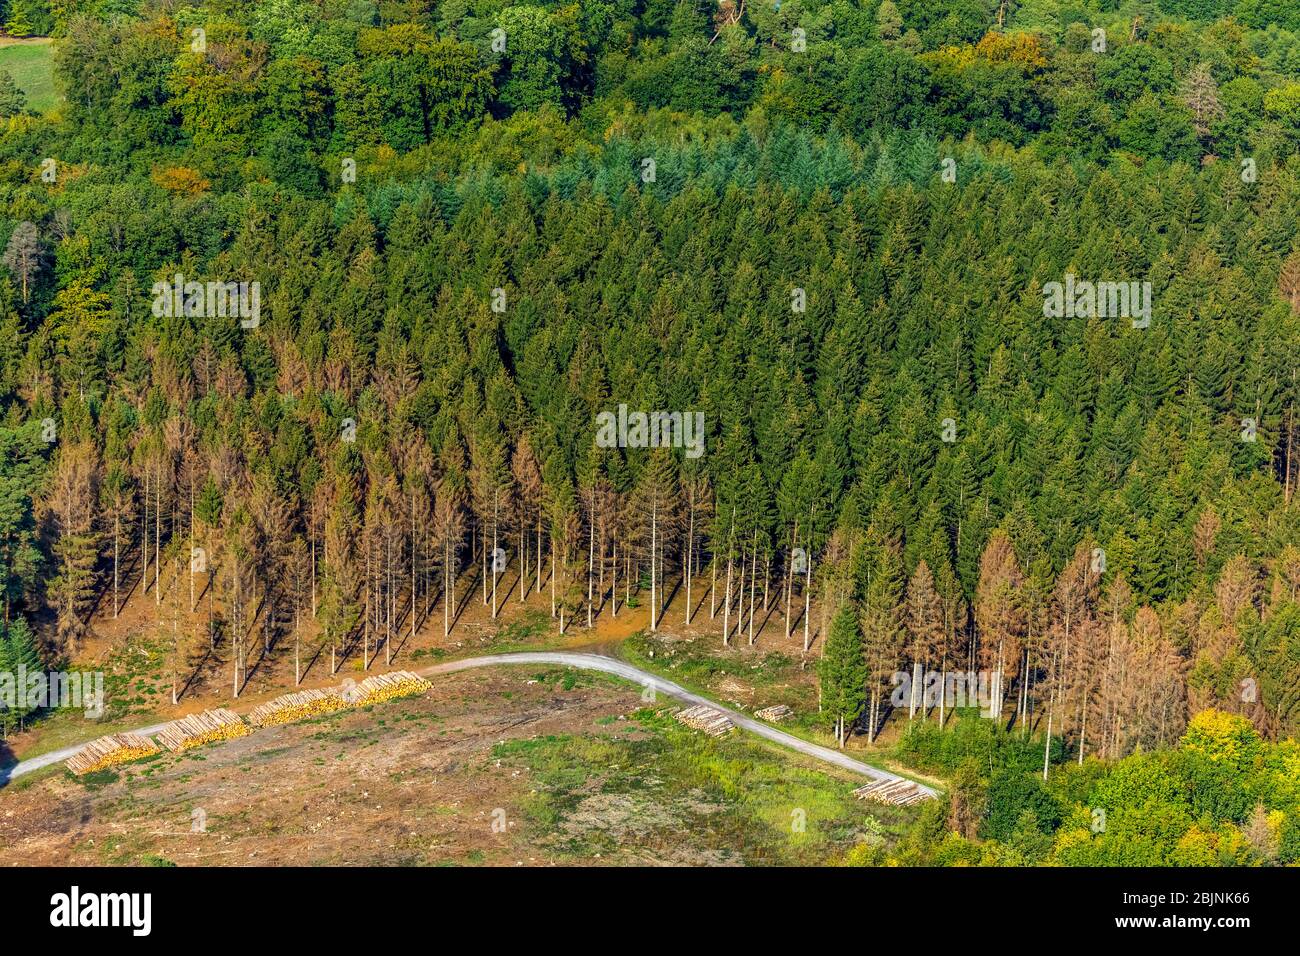 Construcción de terrenos en un bosque, 27.09.2019, vista aérea, Alemania, Renania del Norte-Westfalia, Sauerland, Menden Foto de stock